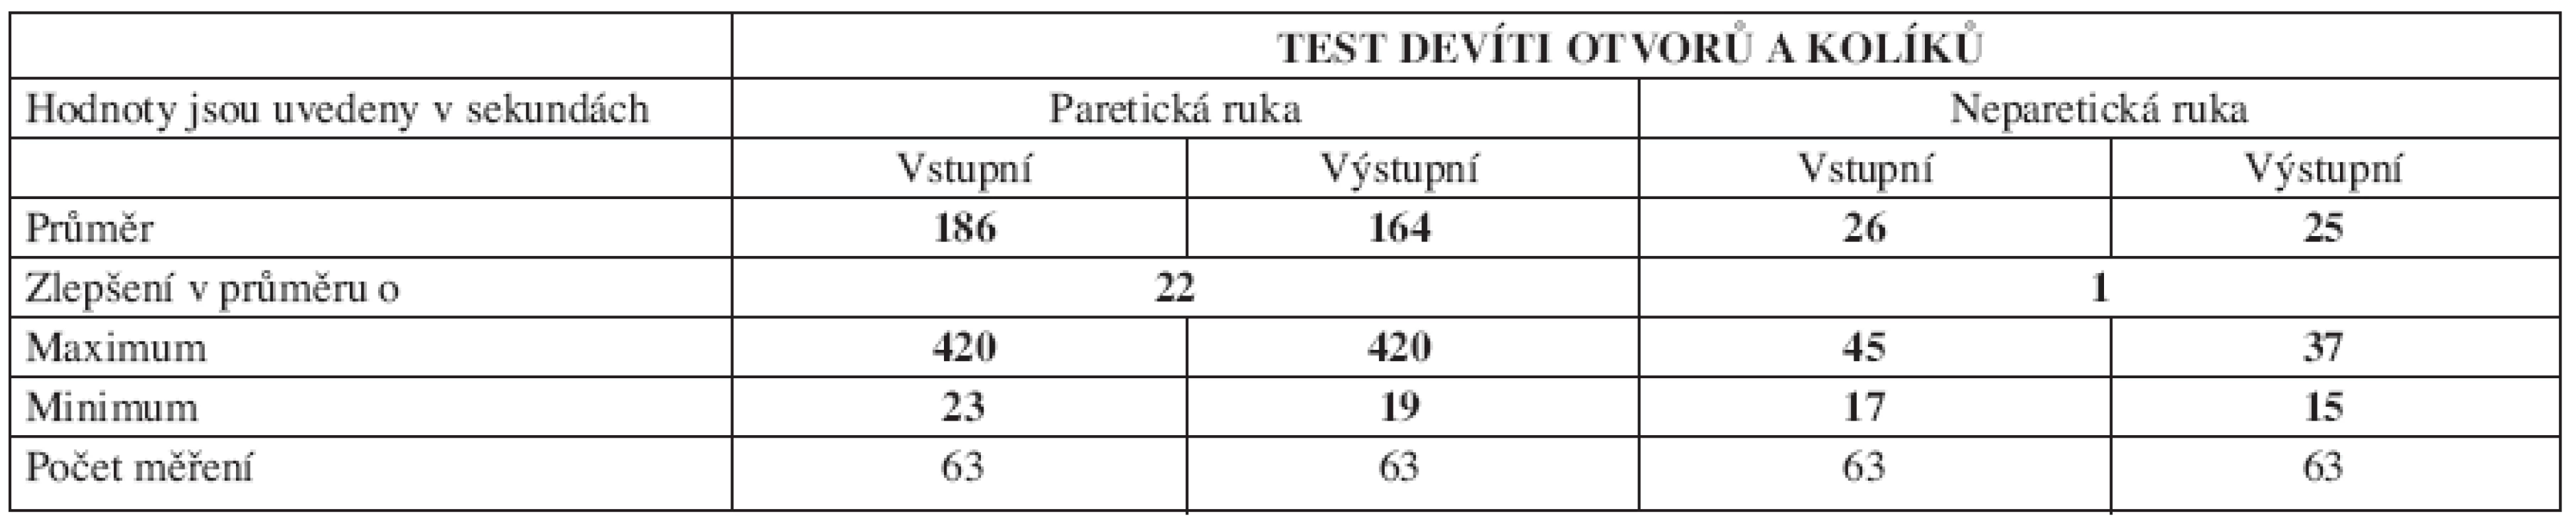 Výsledky skupiny při vyšetření TDOK.